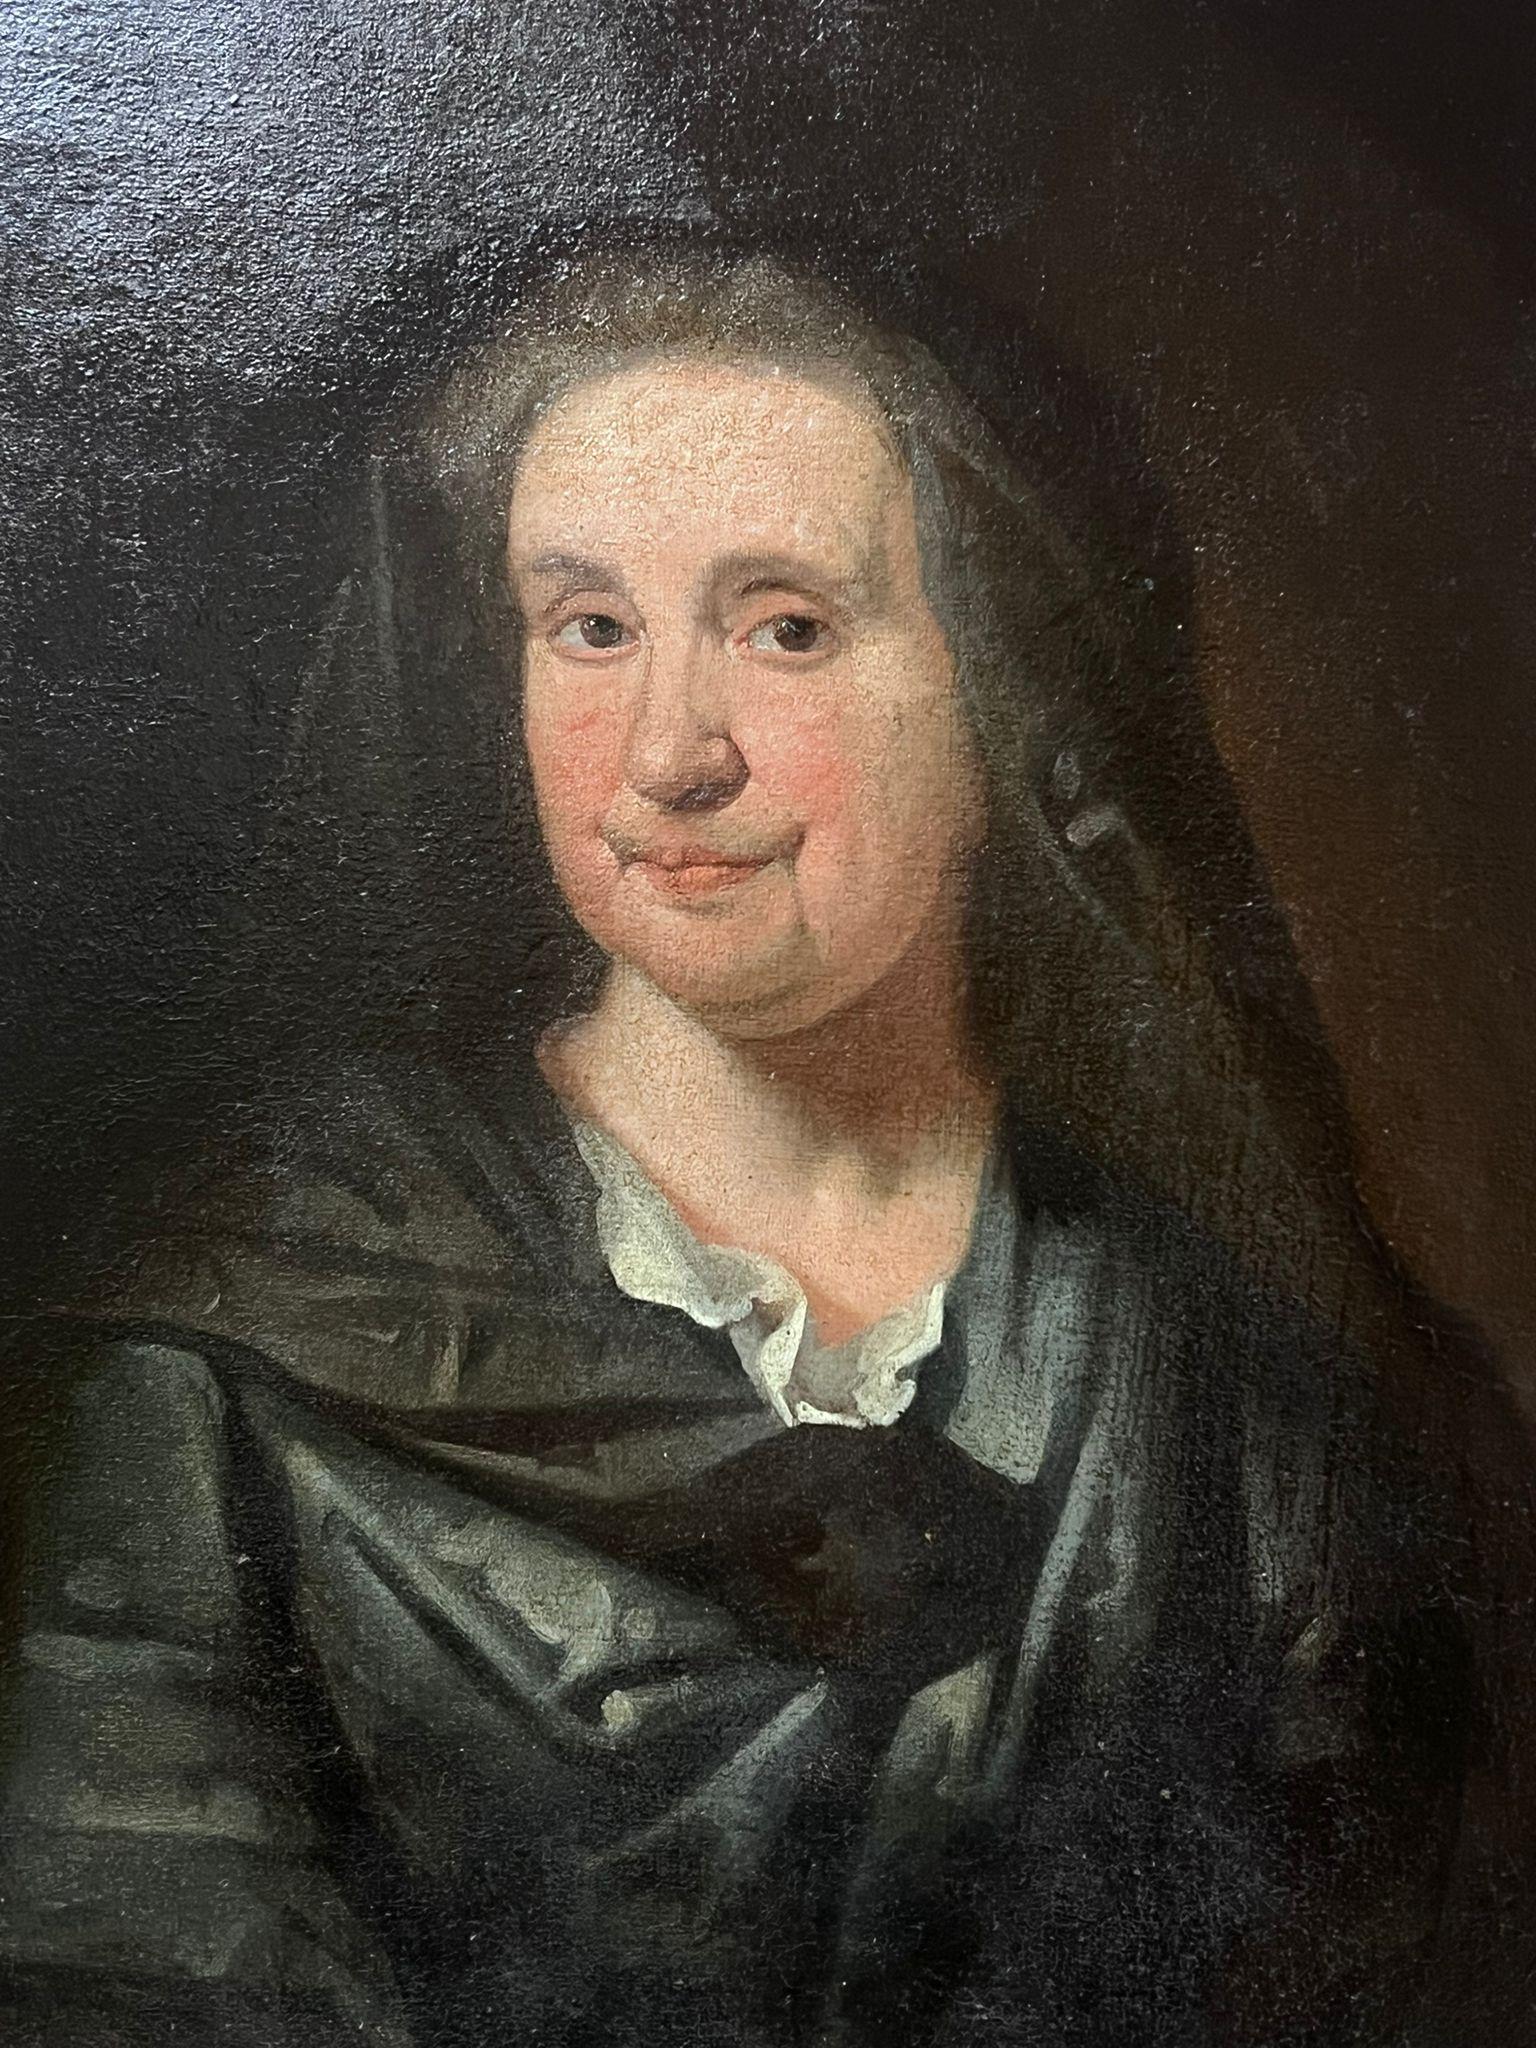 Porträt einer Dame
Englische Schule, 18. Jahrhundert
Öl auf Leinwand, ungerahmt
Leinwand : 31 x 25 Zoll
Provenienz: Privatsammlung, Großbritannien
Zustand: guter und gesunder Zustand 